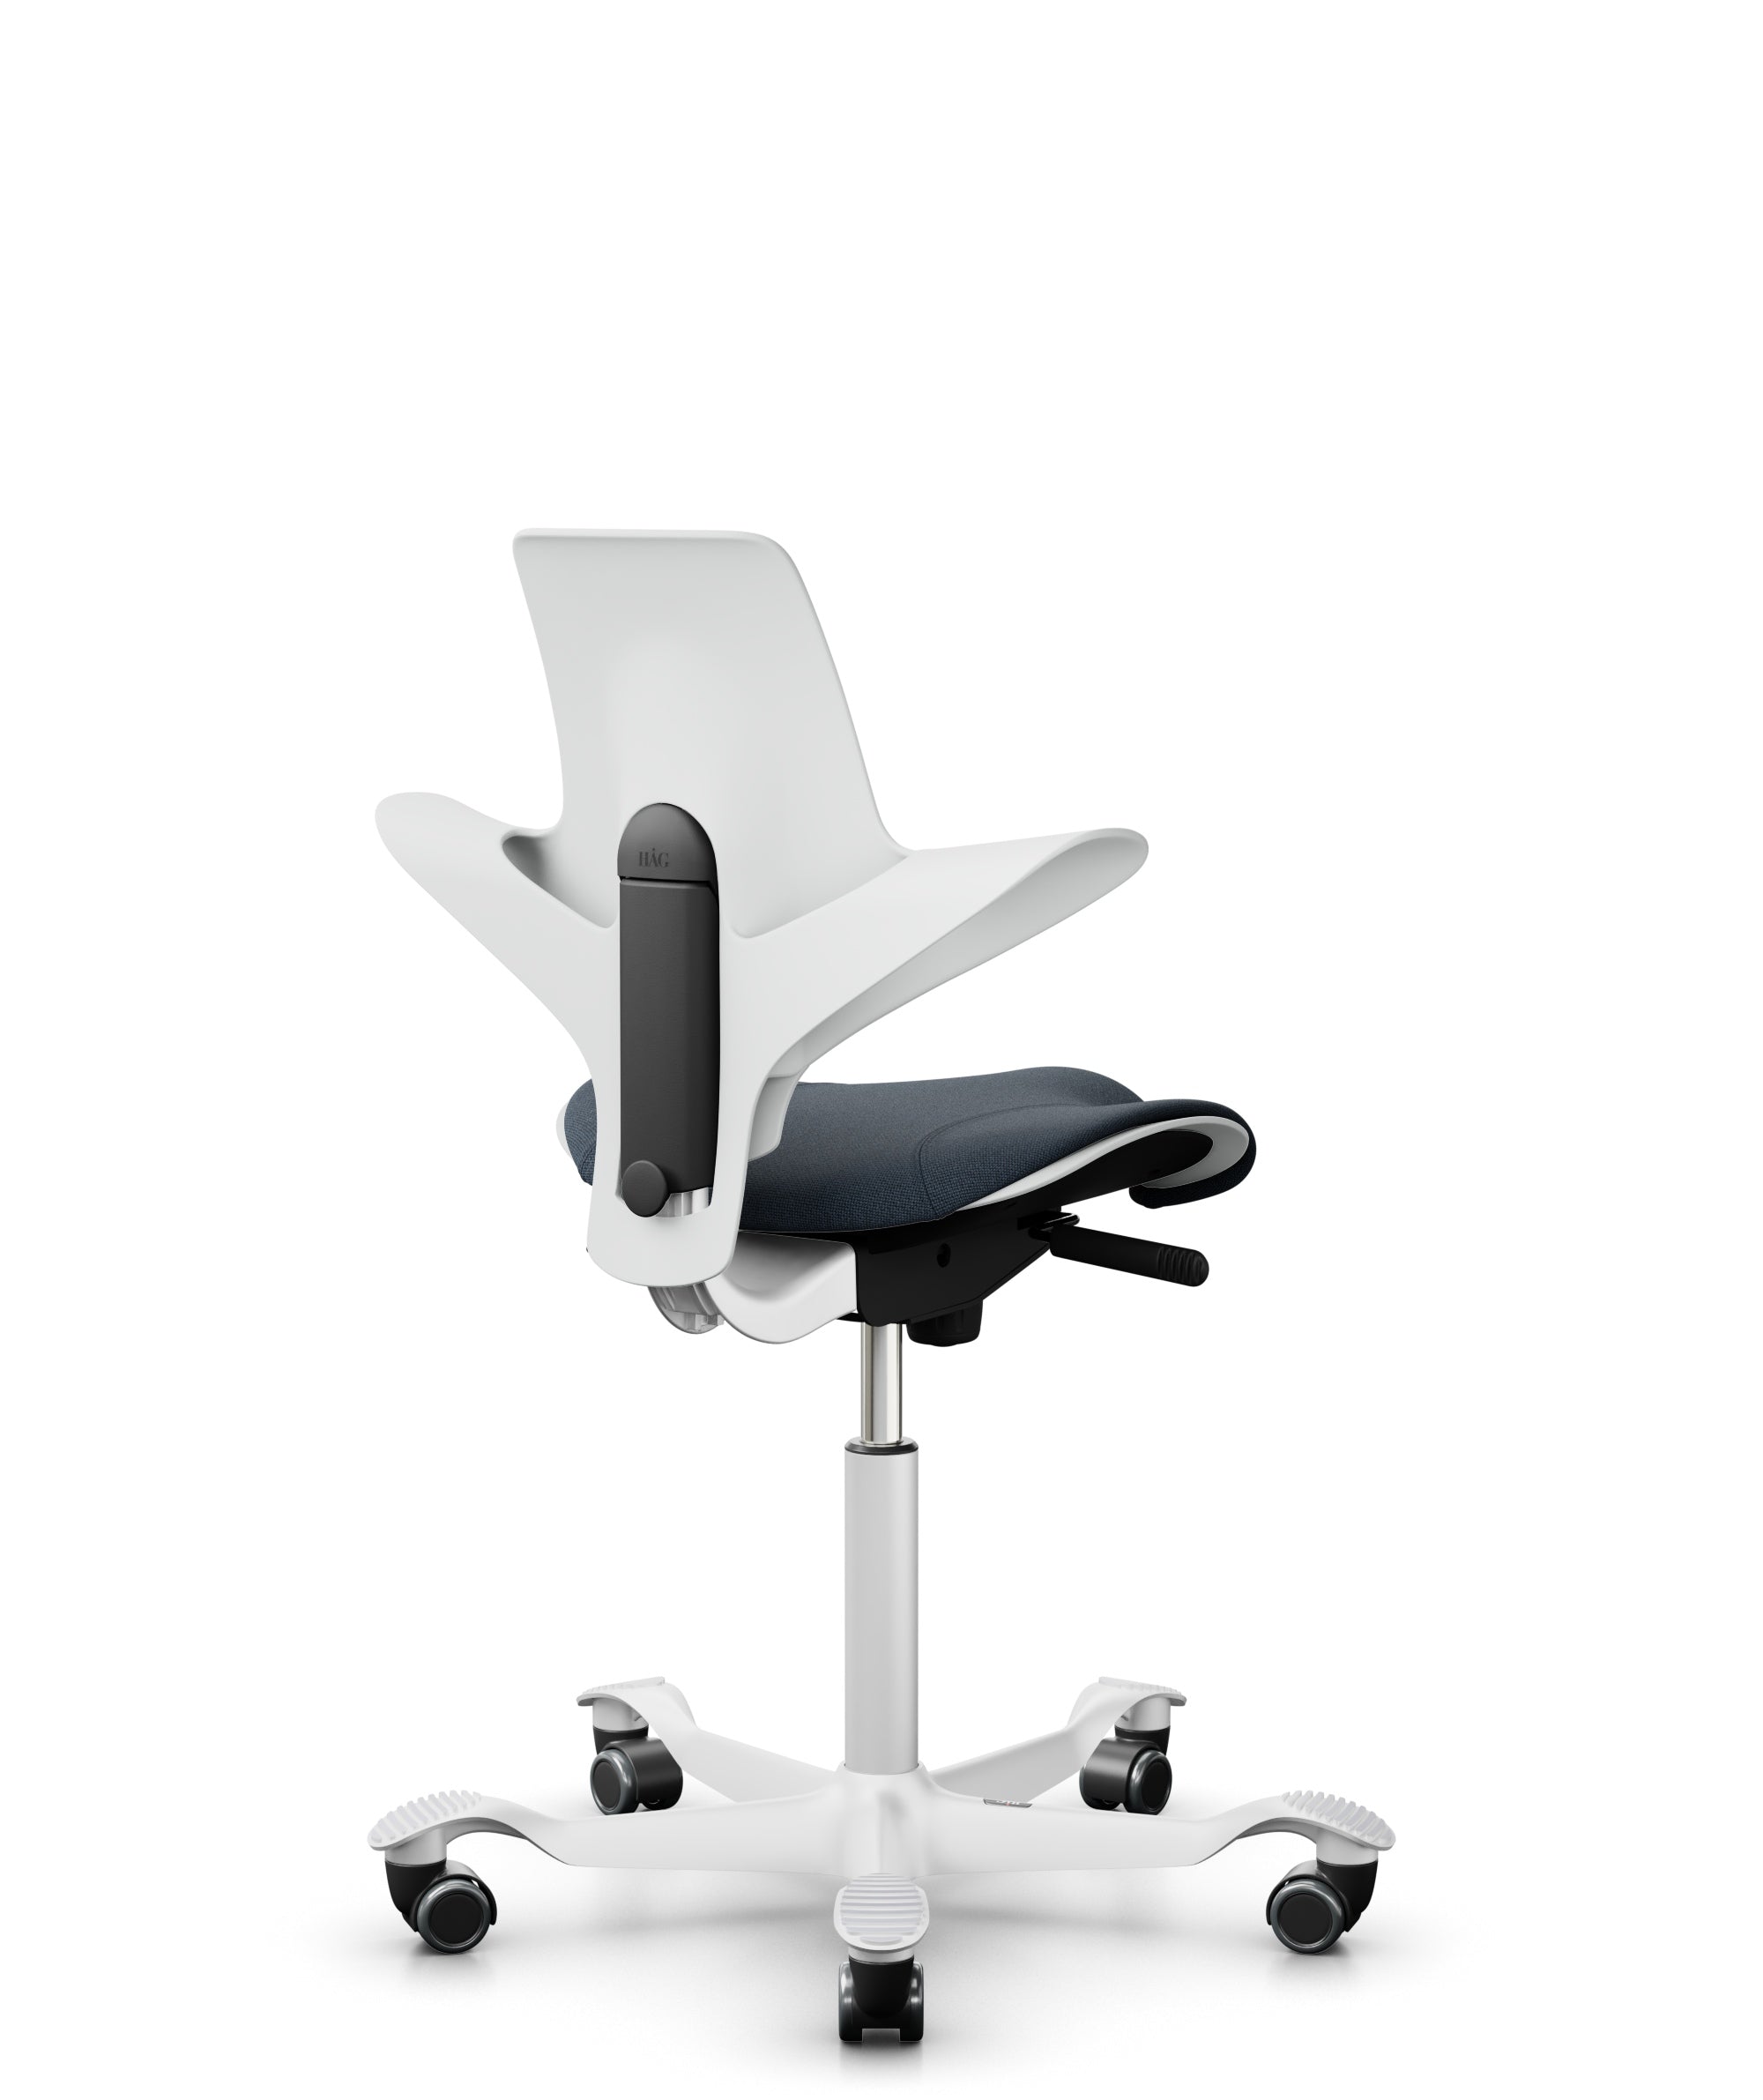 HAG Capisco Puls Ergonomic Posture Chair Singapore